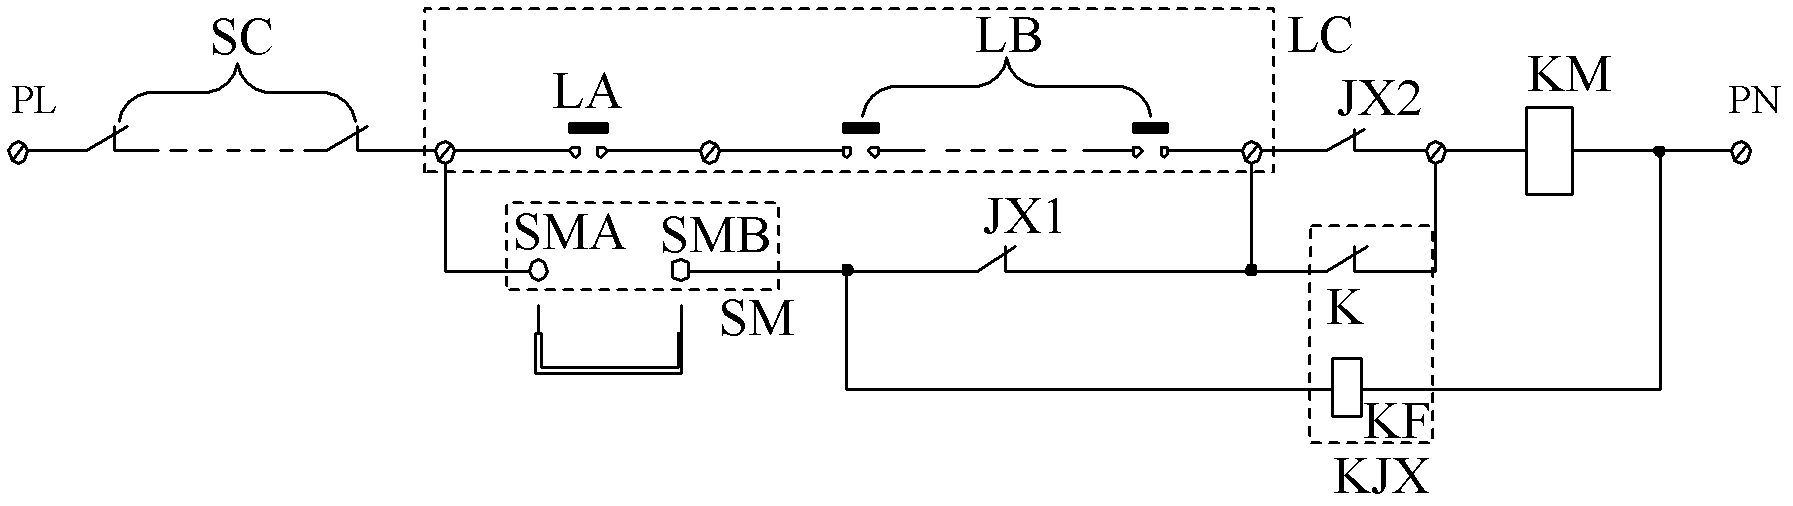 Door interlock short-circuit protection loop for elevator